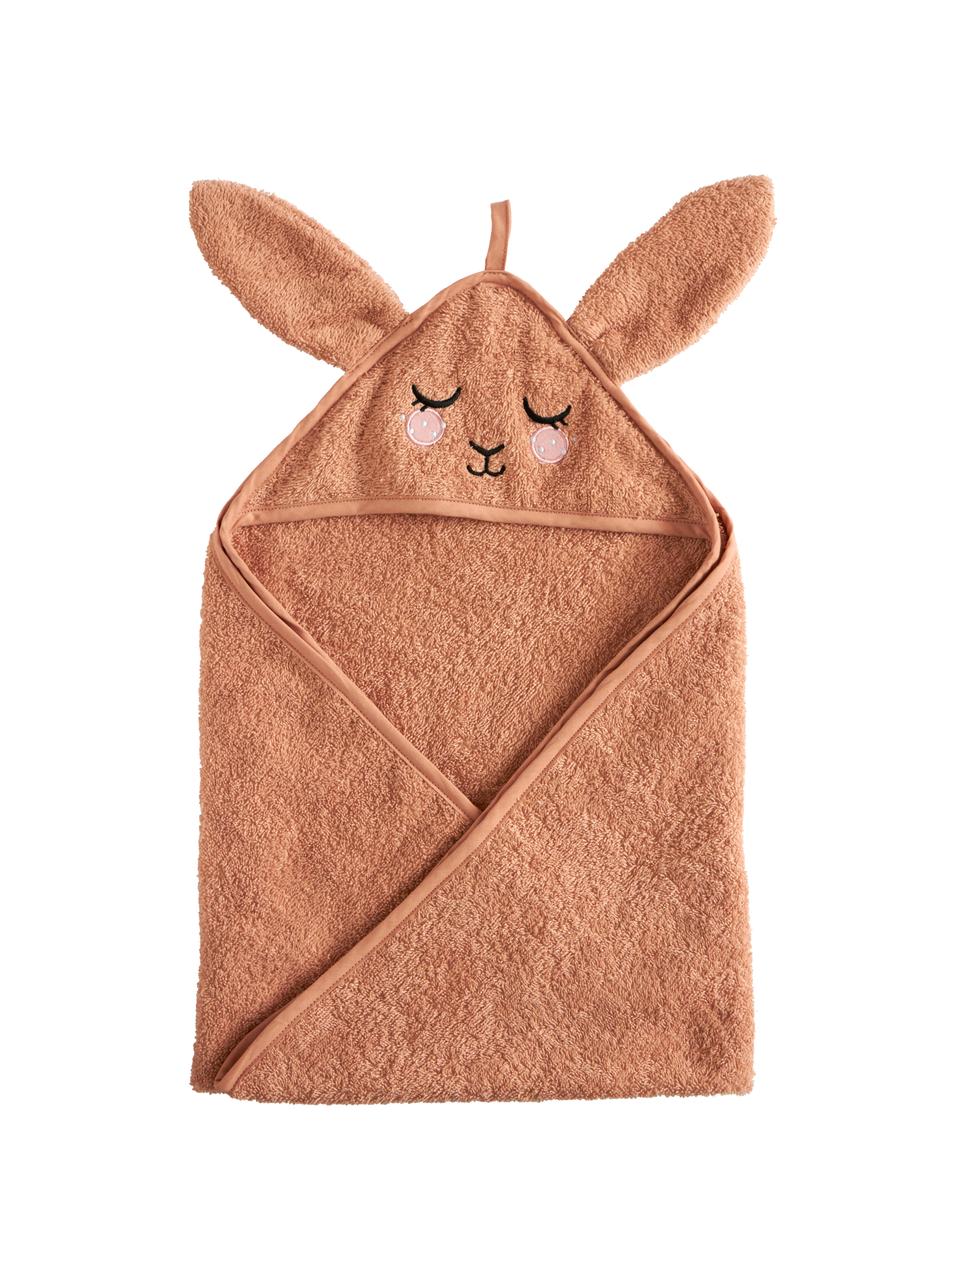 Asciugamano bambini in cotone organico Bunny, 100% cotone organico certificato GOTS, Terracotta, Larg. 72 x Lung. 72 cm